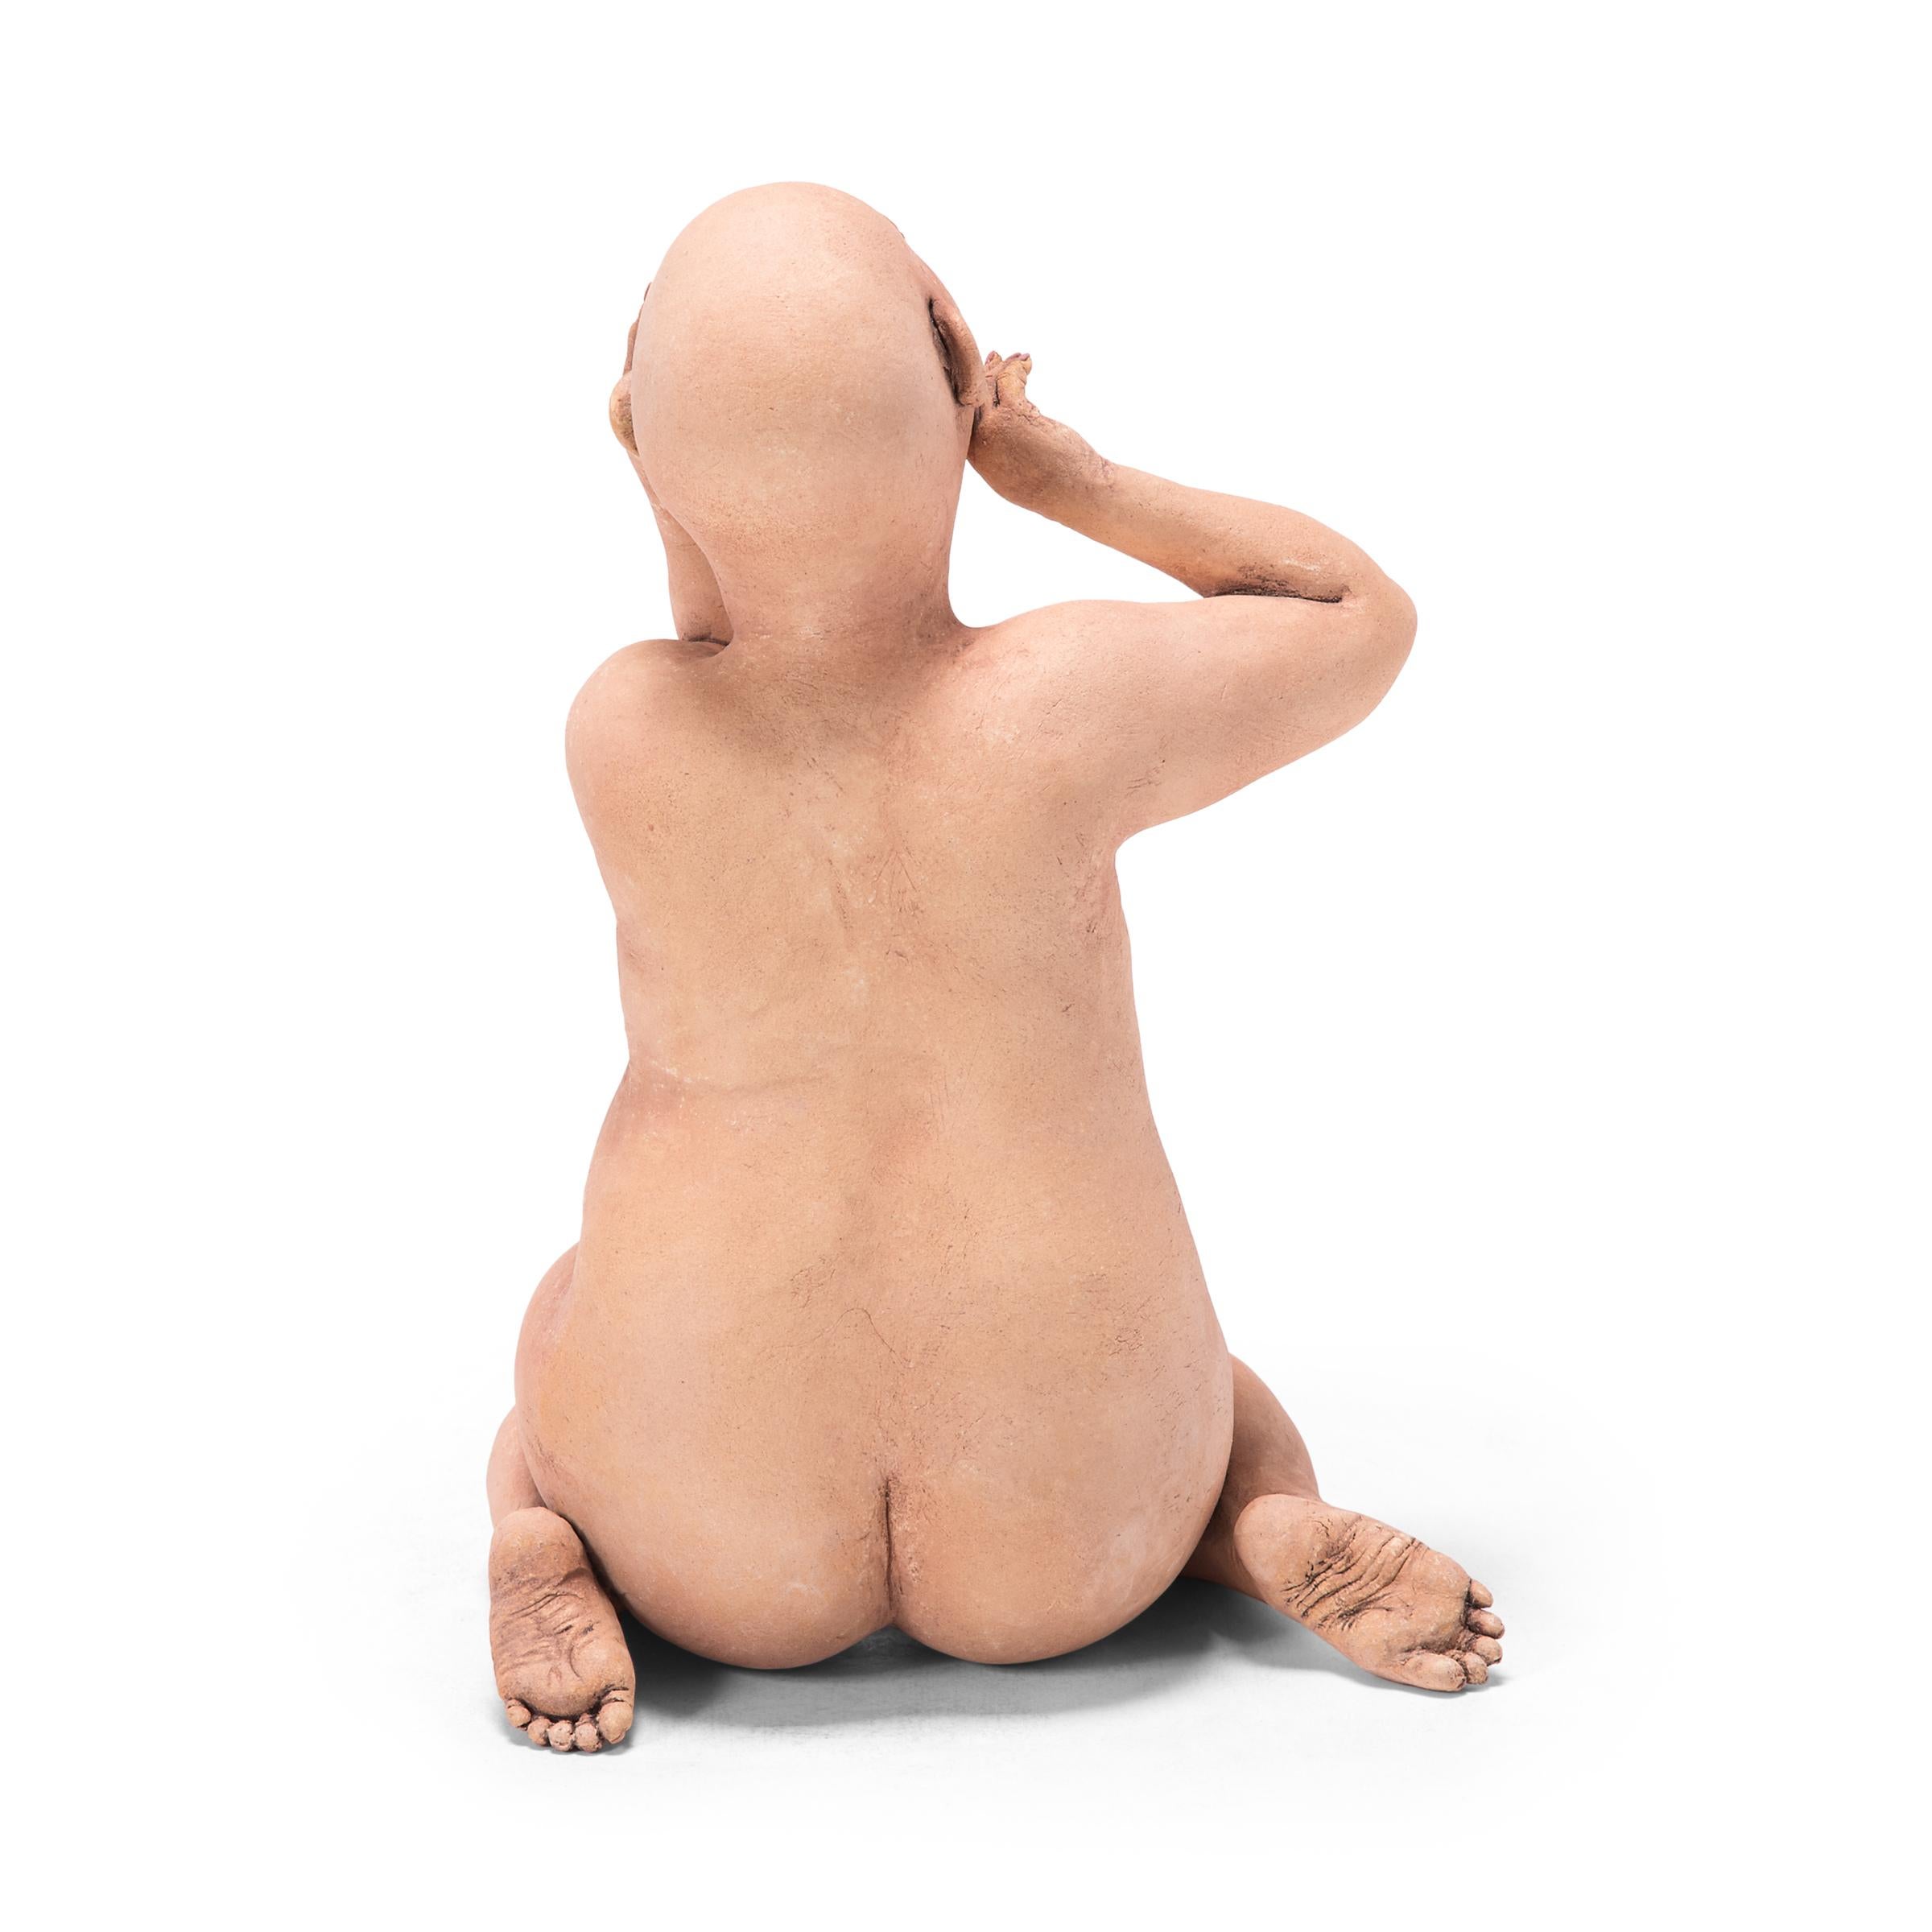 Die kahlköpfigen und klobigen Knetfiguren von Esther Shimazu sind unverschämt nackt und herrlich ausschweifend. Ausgehend von ihrer japanischen Abstammung und ihren Erfahrungen in einer entspannten asiatischen Gemeinde auf Hawaii verleiht die